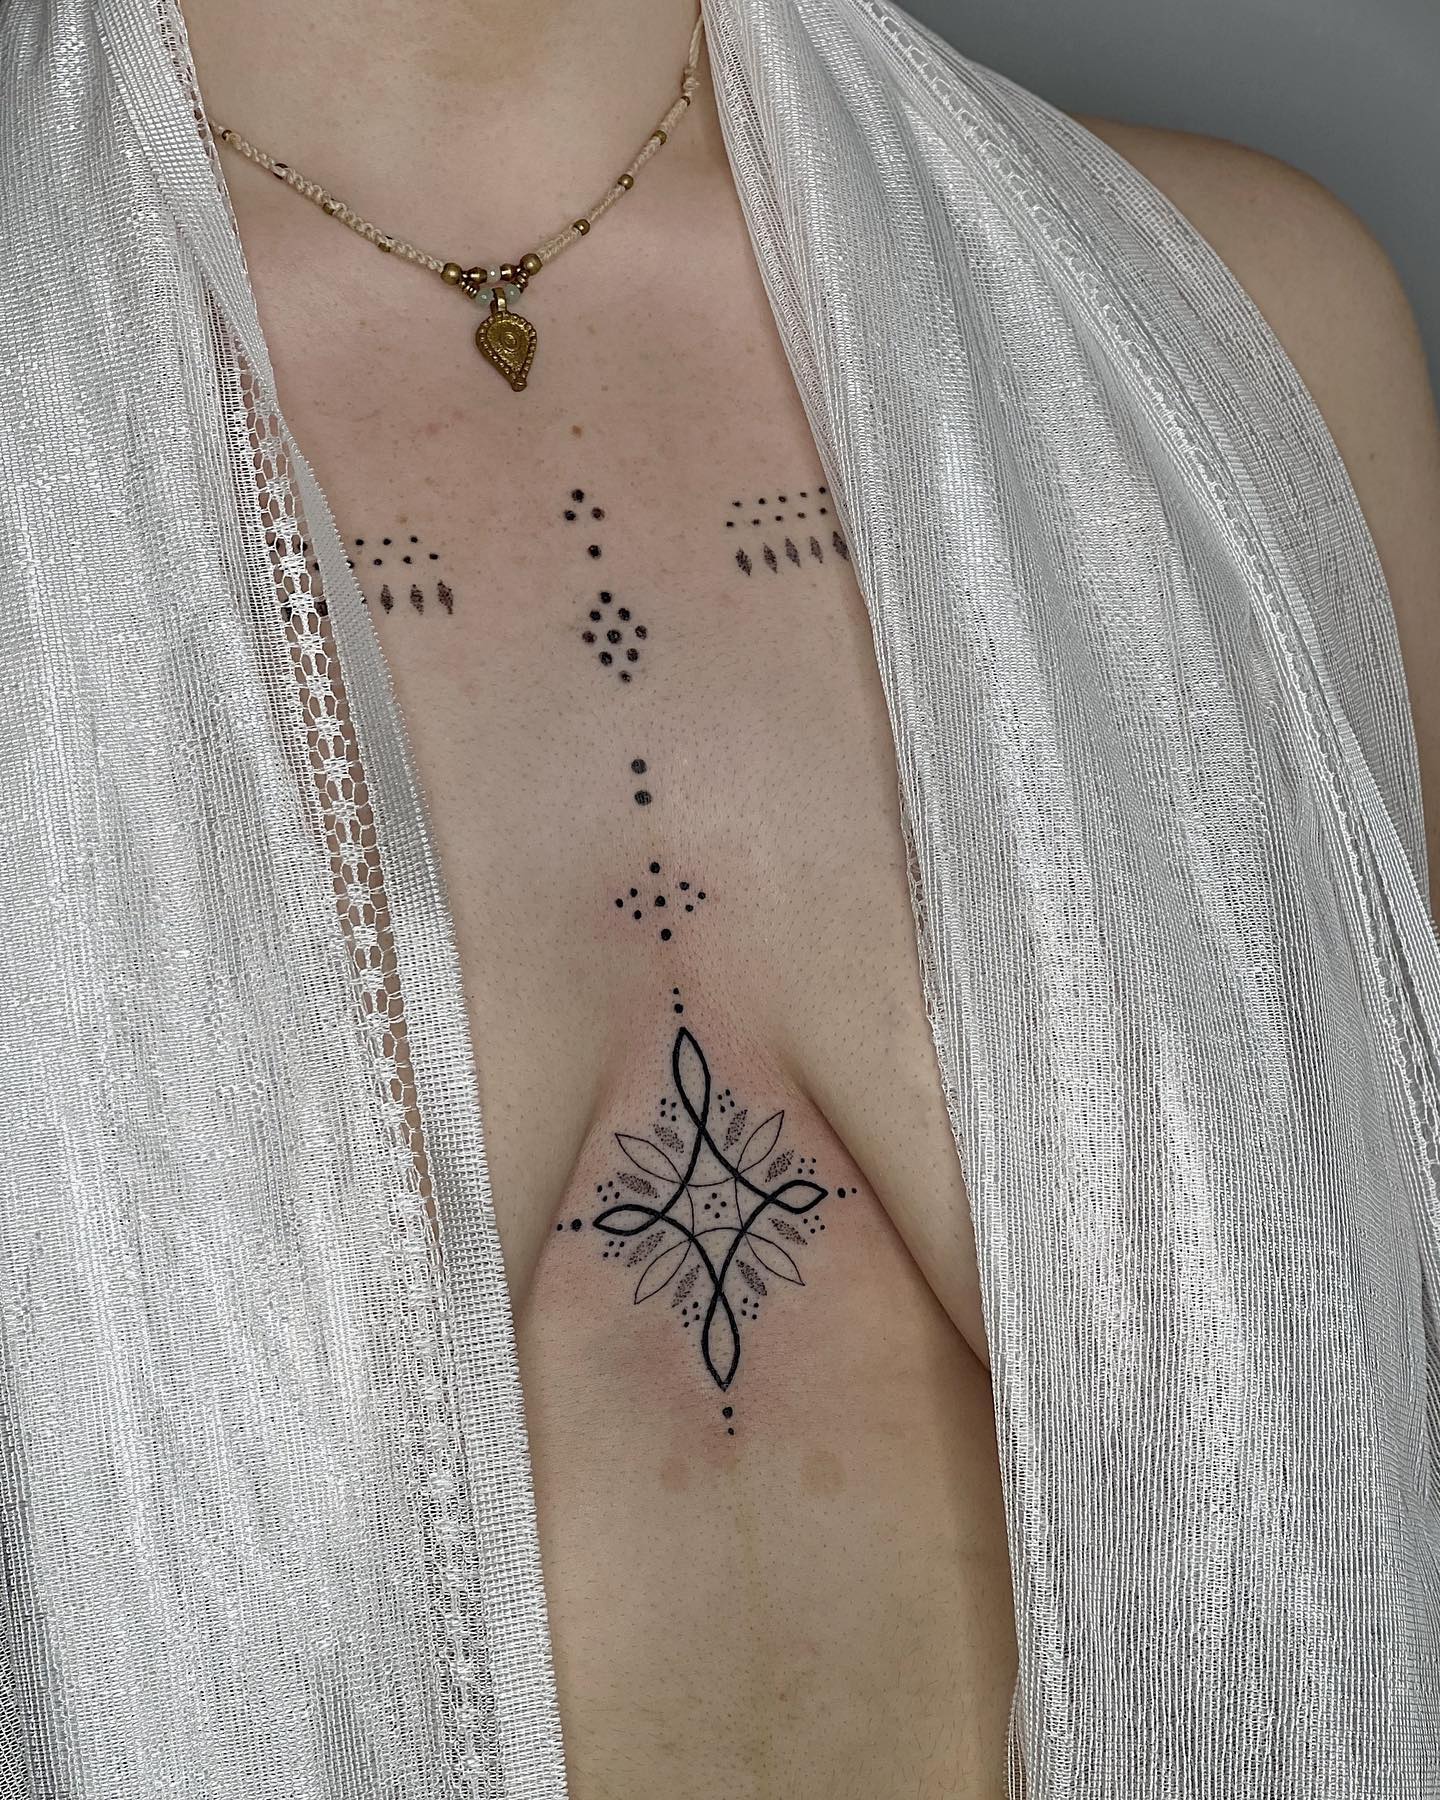 Tatuaje de puntos pequeños entre los senos